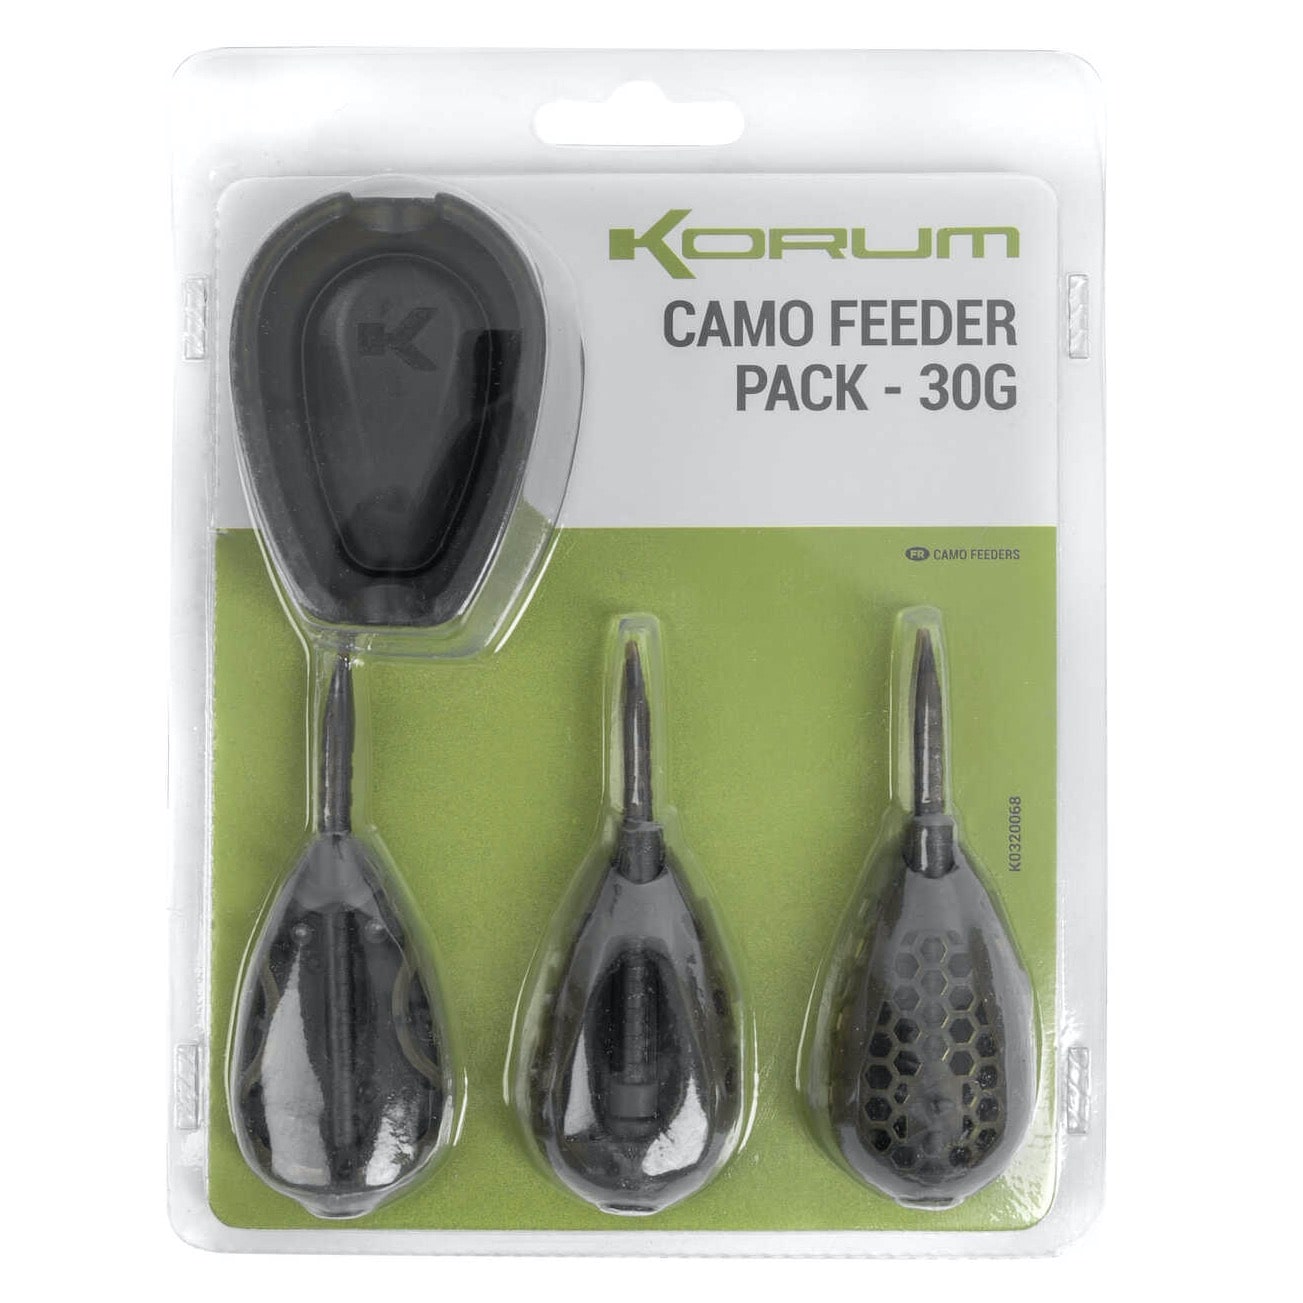 korum camo feeder pack 30g K0320068